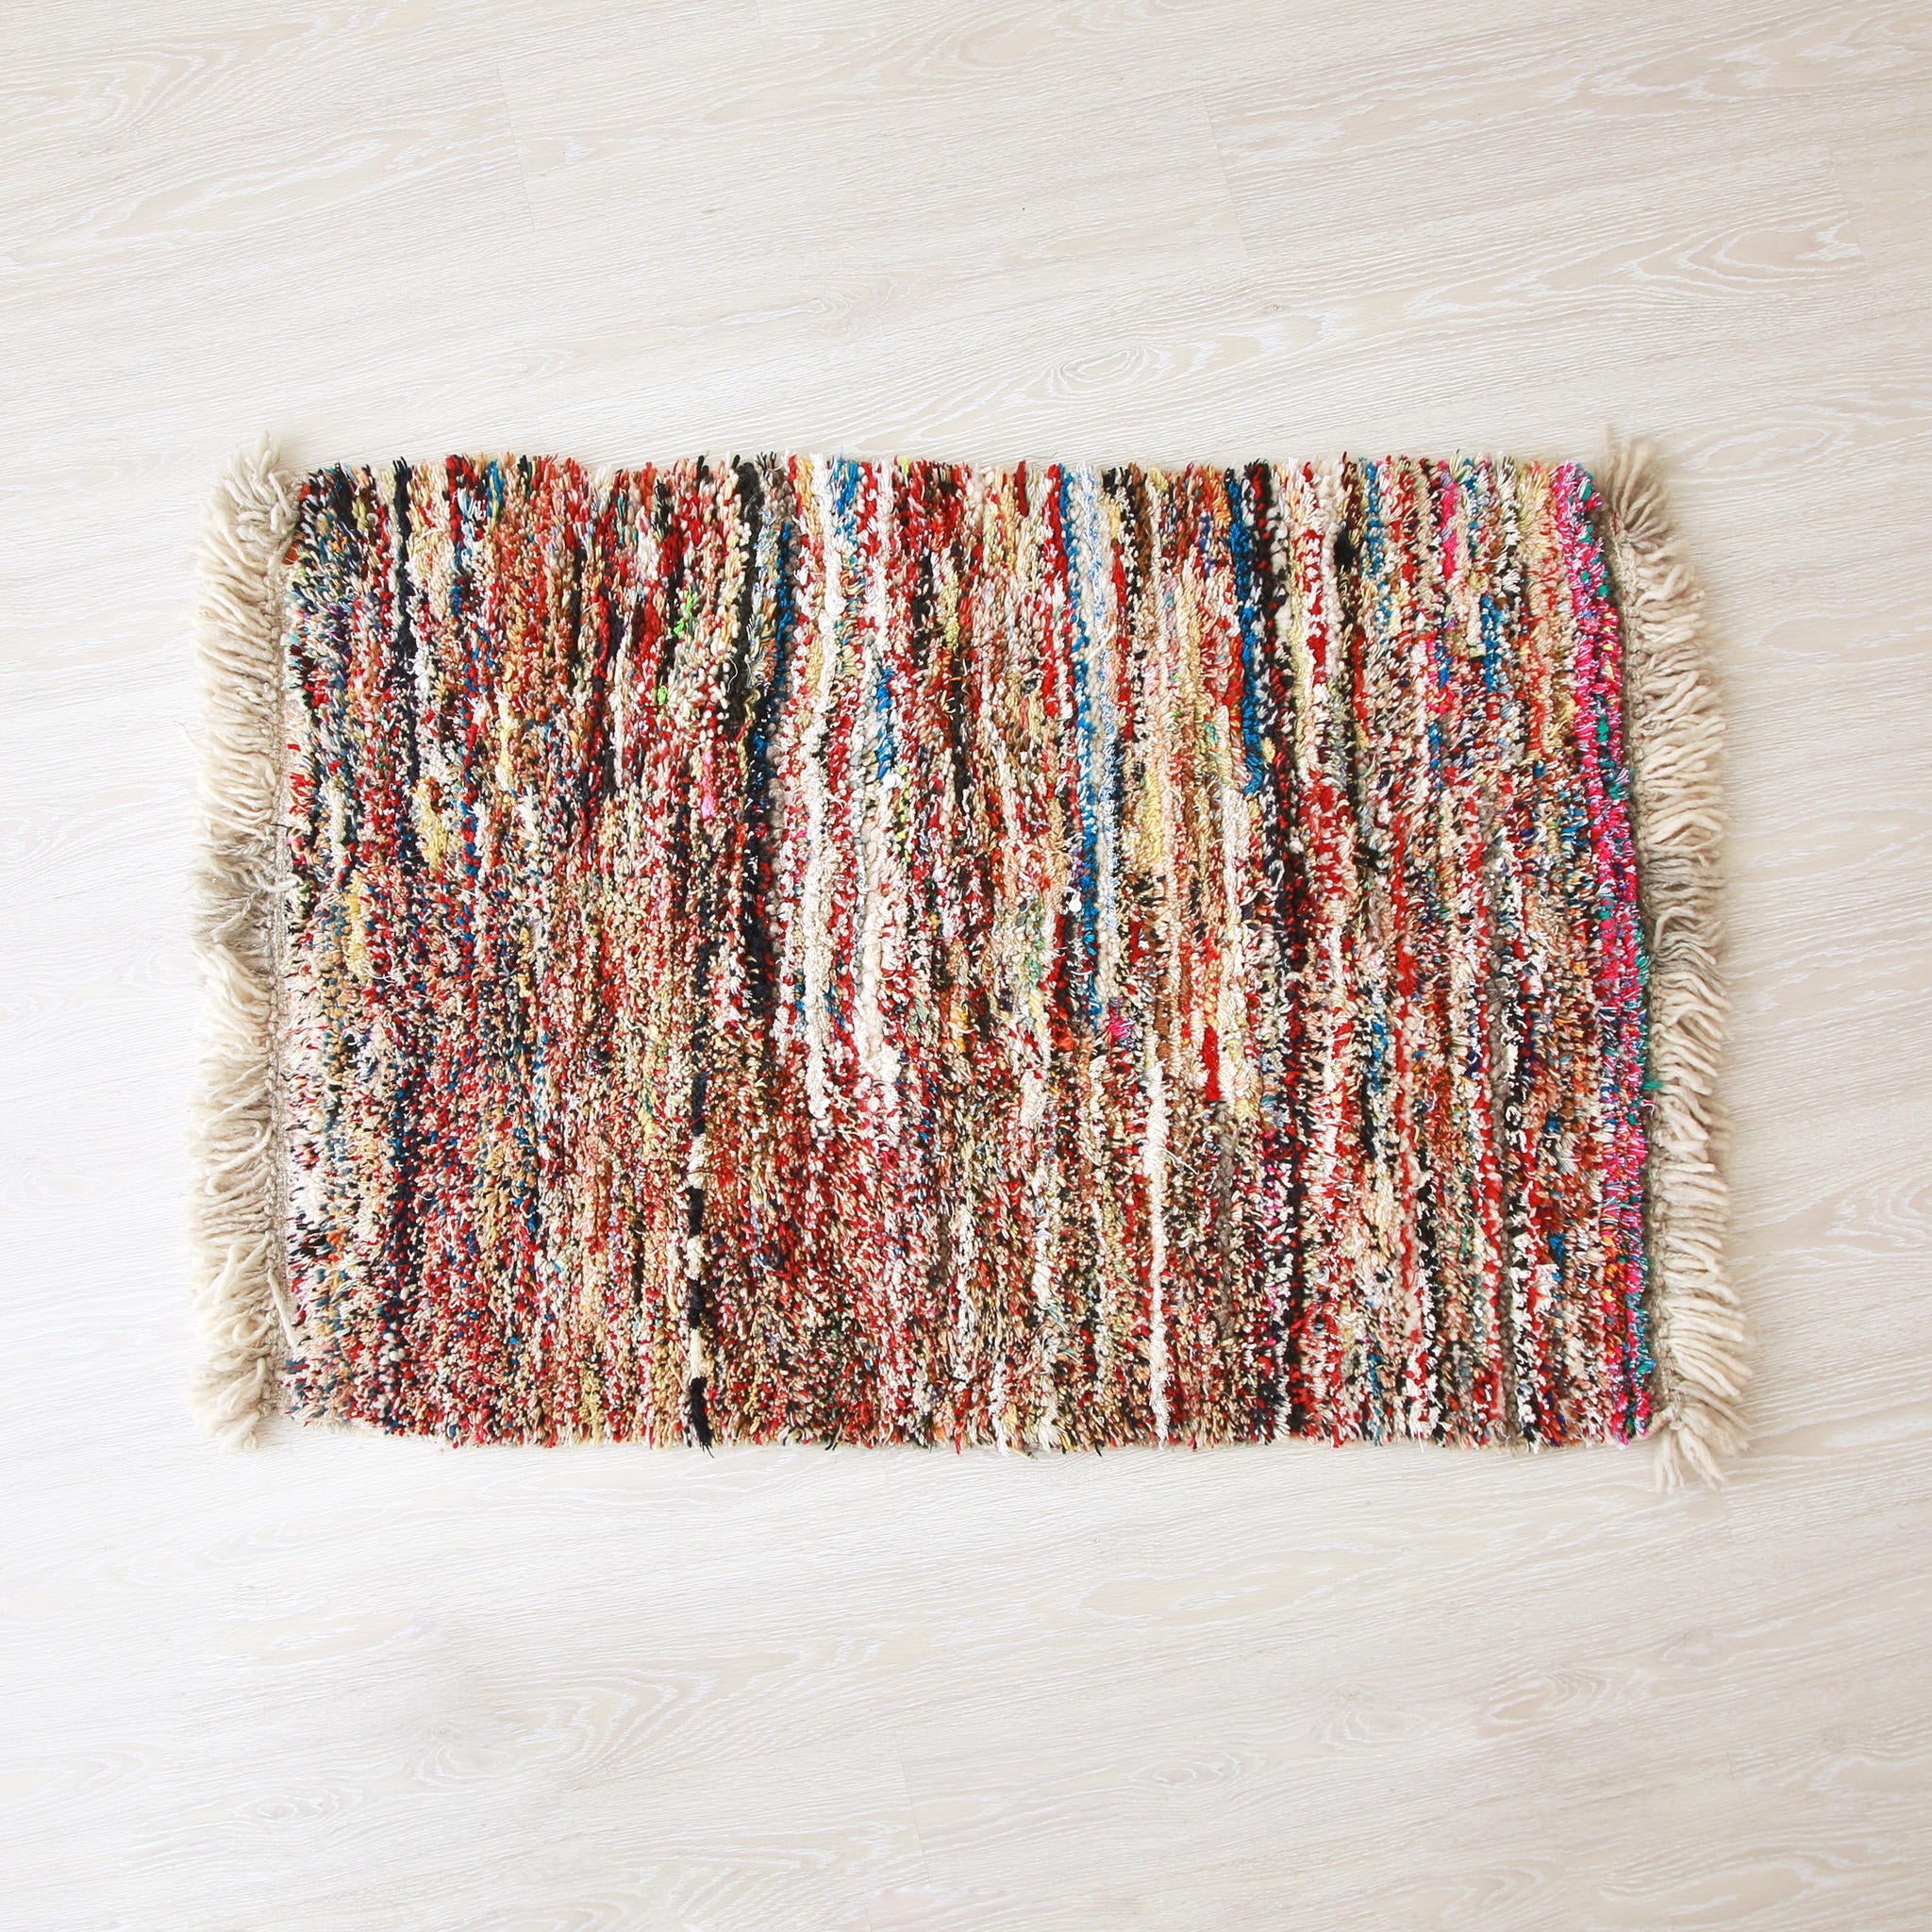 piccolo tappeto marocchino realizzato a mano con resti di lana e filati colorati